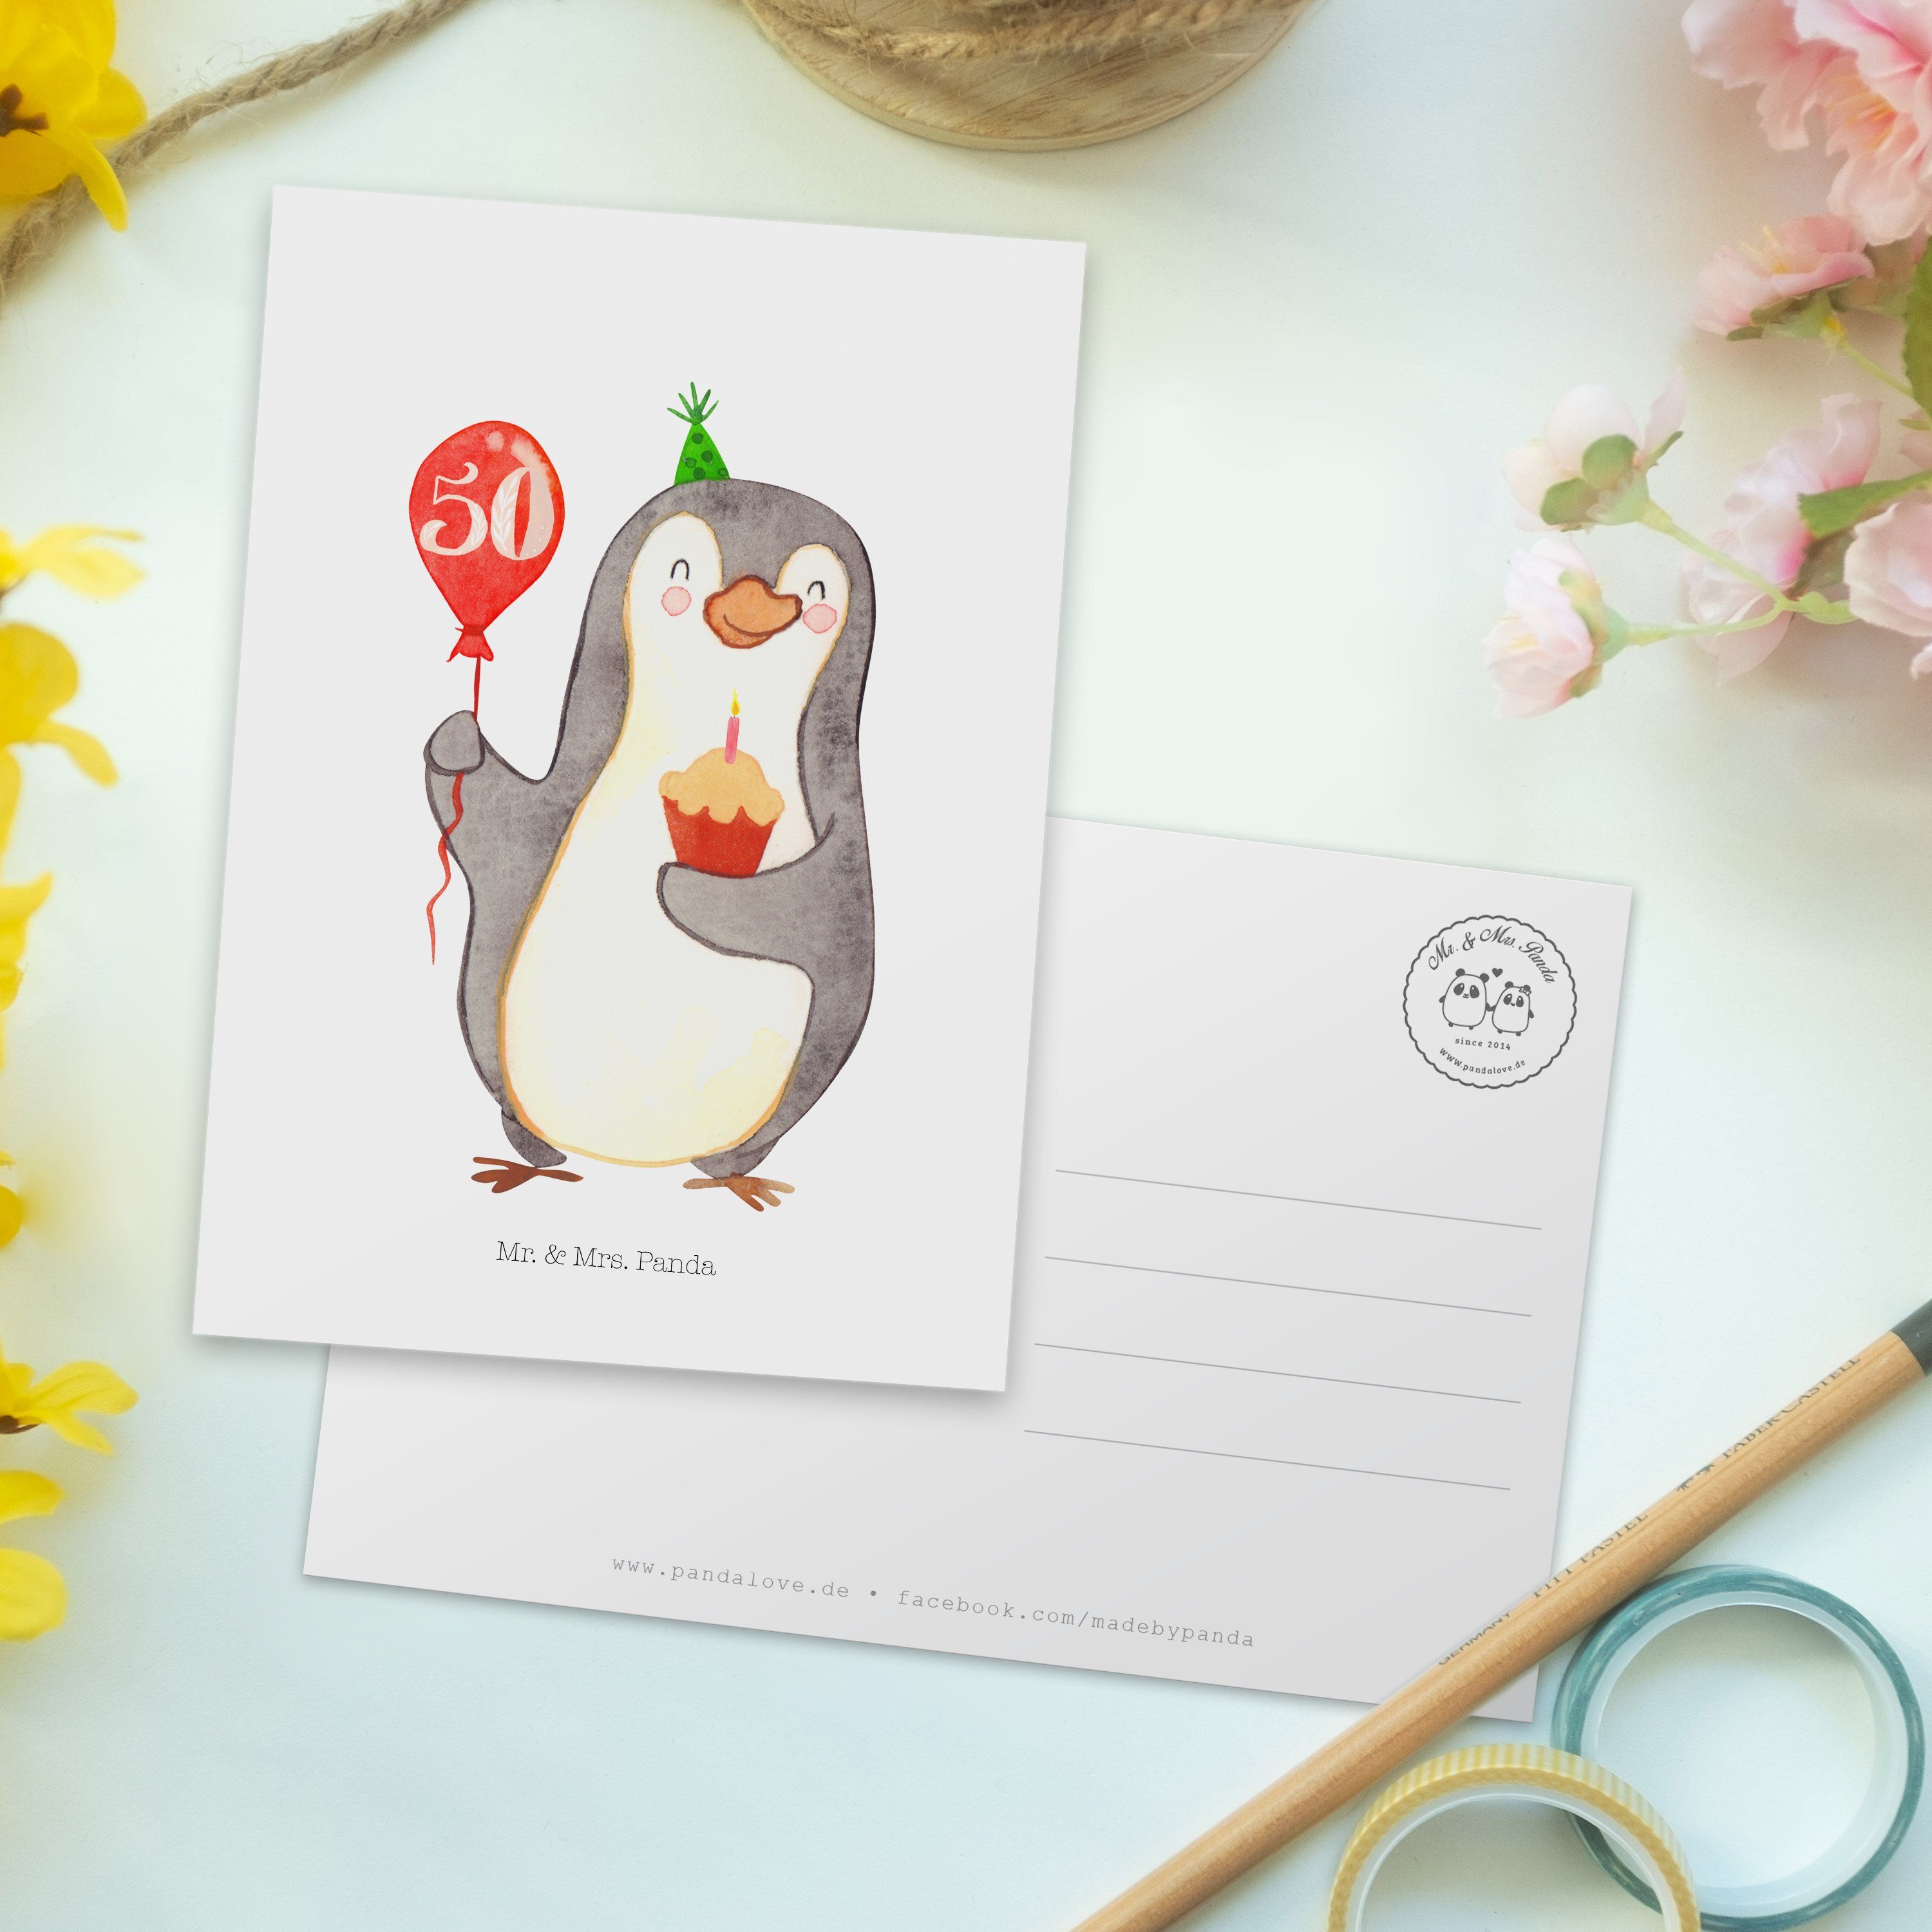 Mr. & Mrs. Panda Postkarte 50. Geburtstag Pinguin Luftballon - Weiß - Geschenk, Party, Herzliche